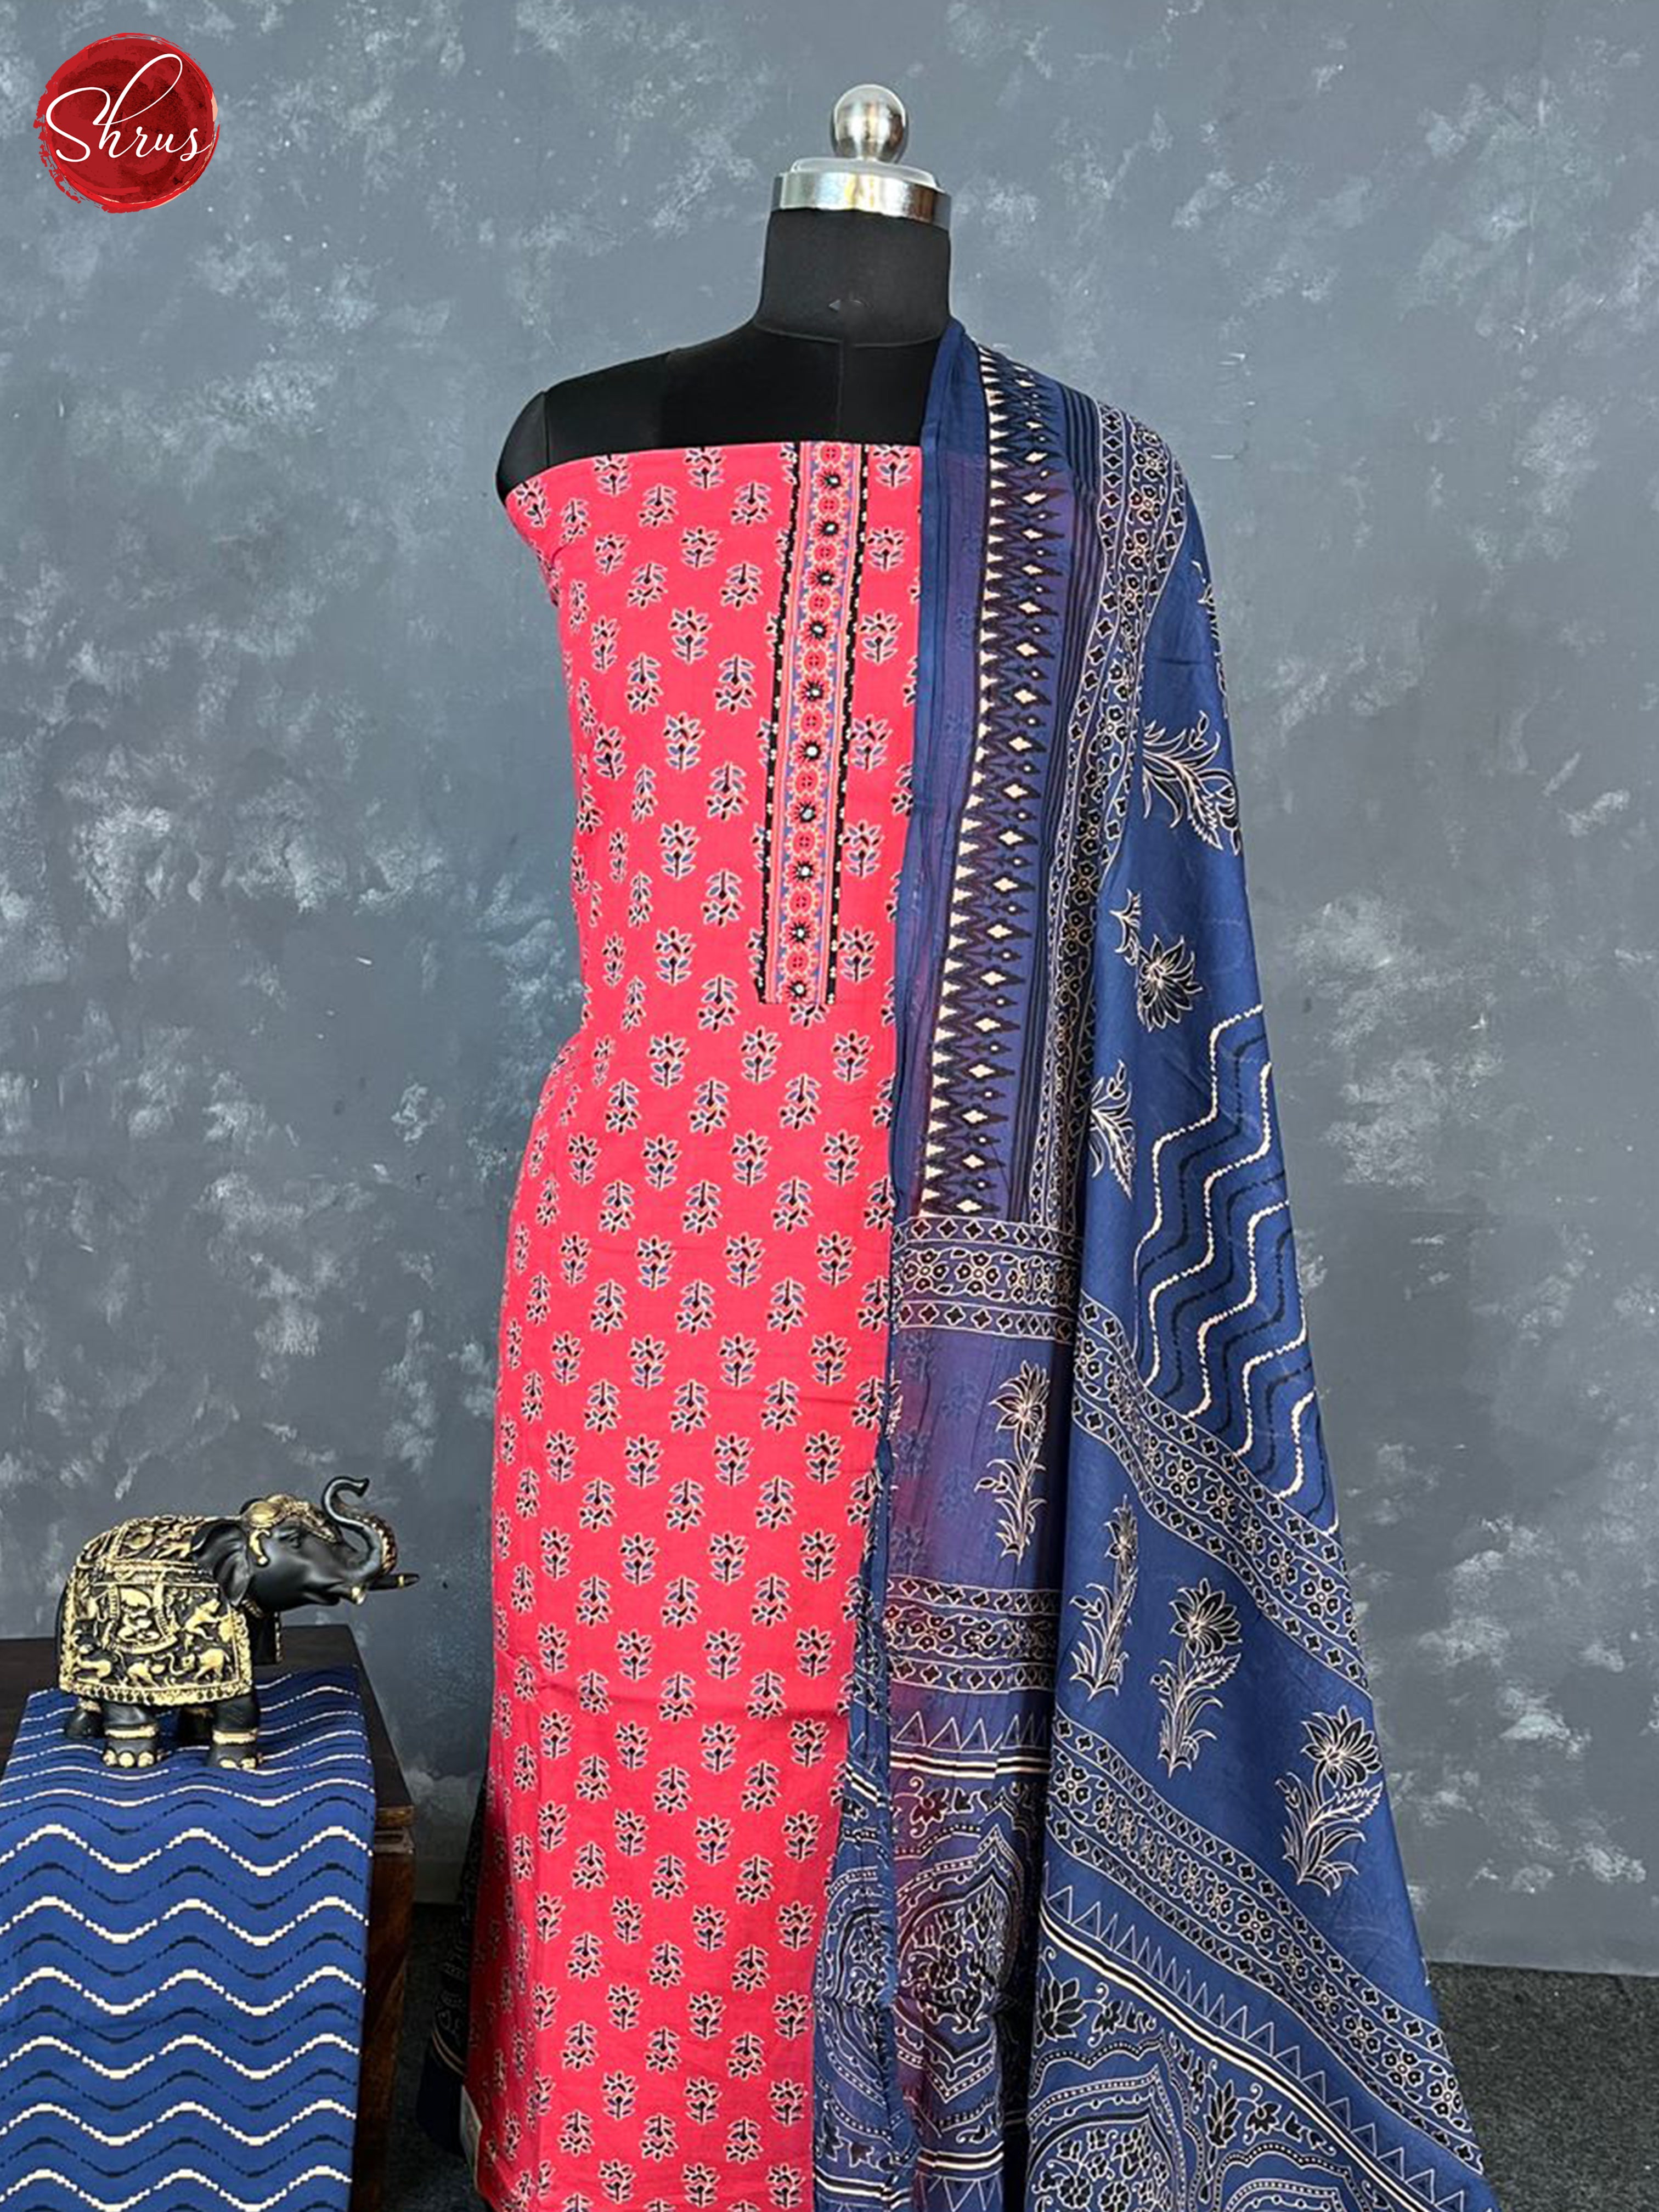 Pink & Blue - Unstitched Salwar - Shop on ShrusEternity.com